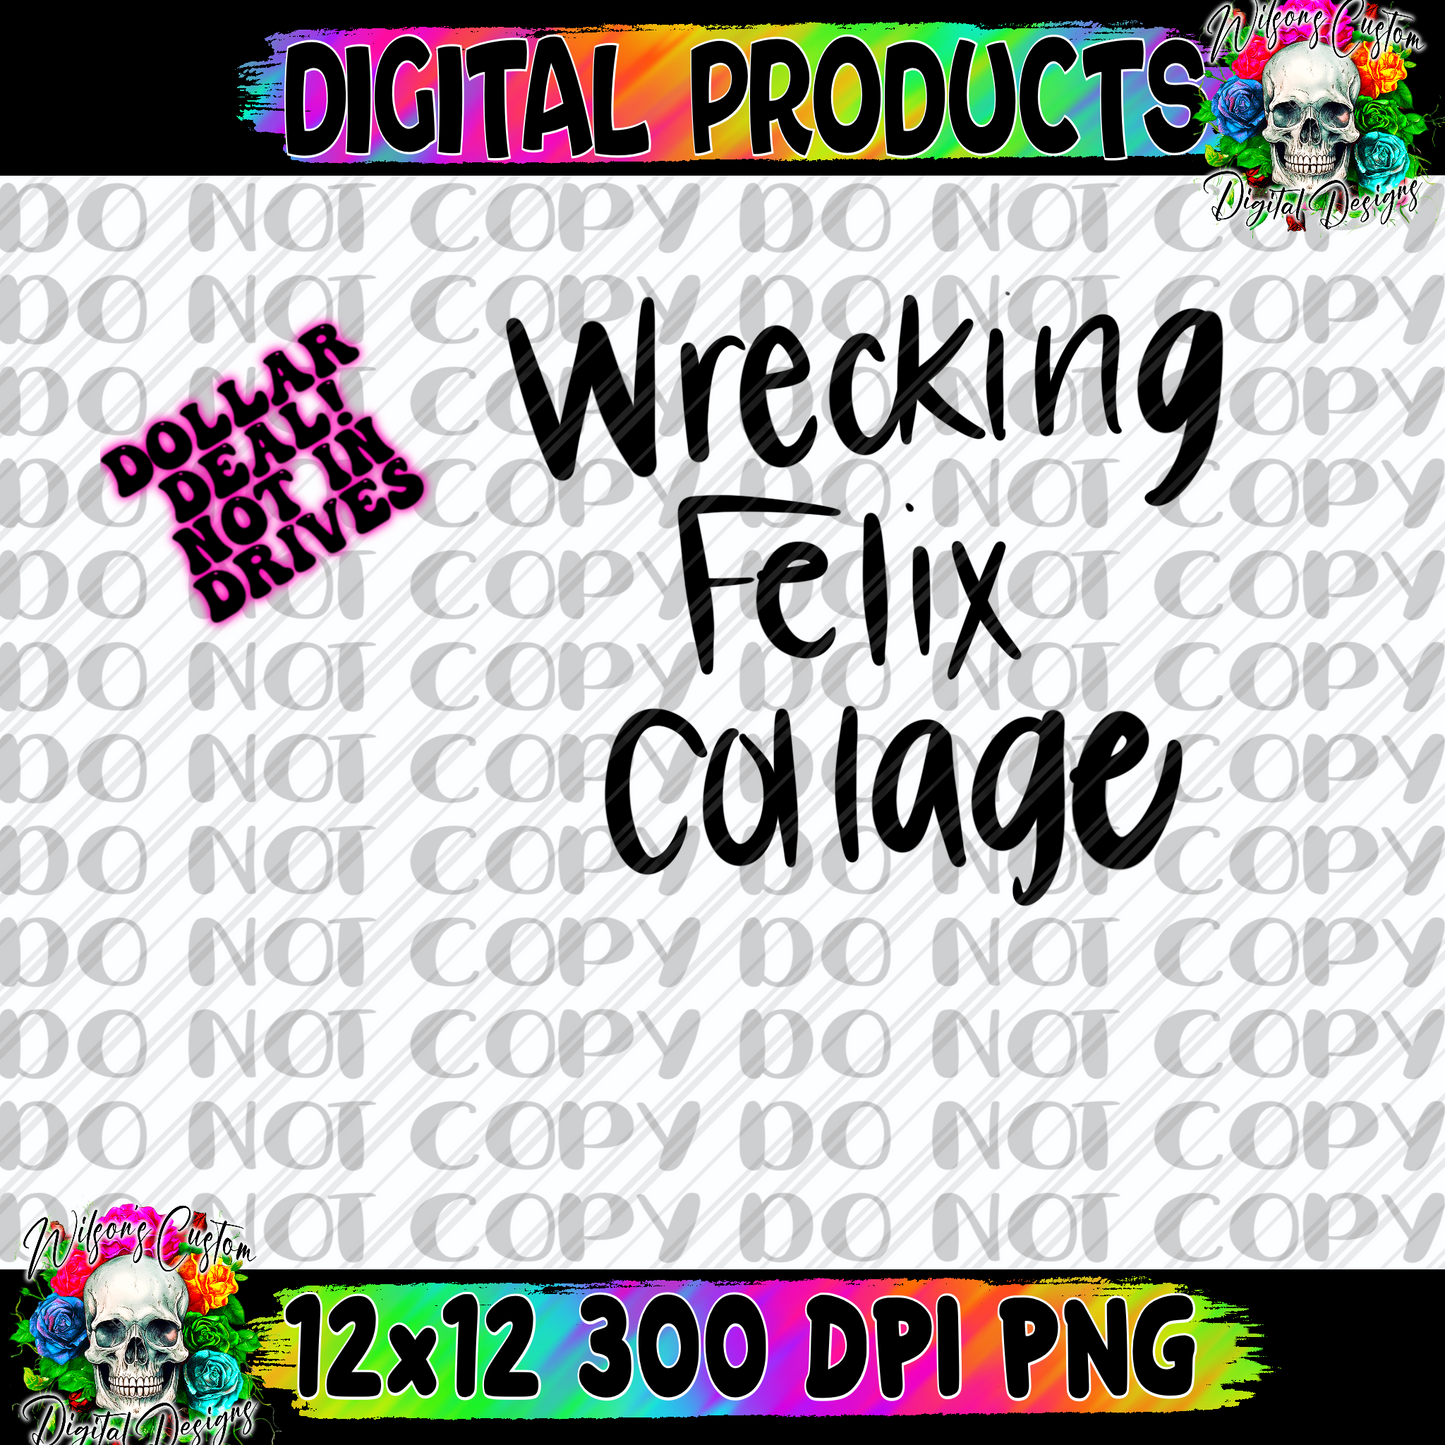 Wrecking Felix collage